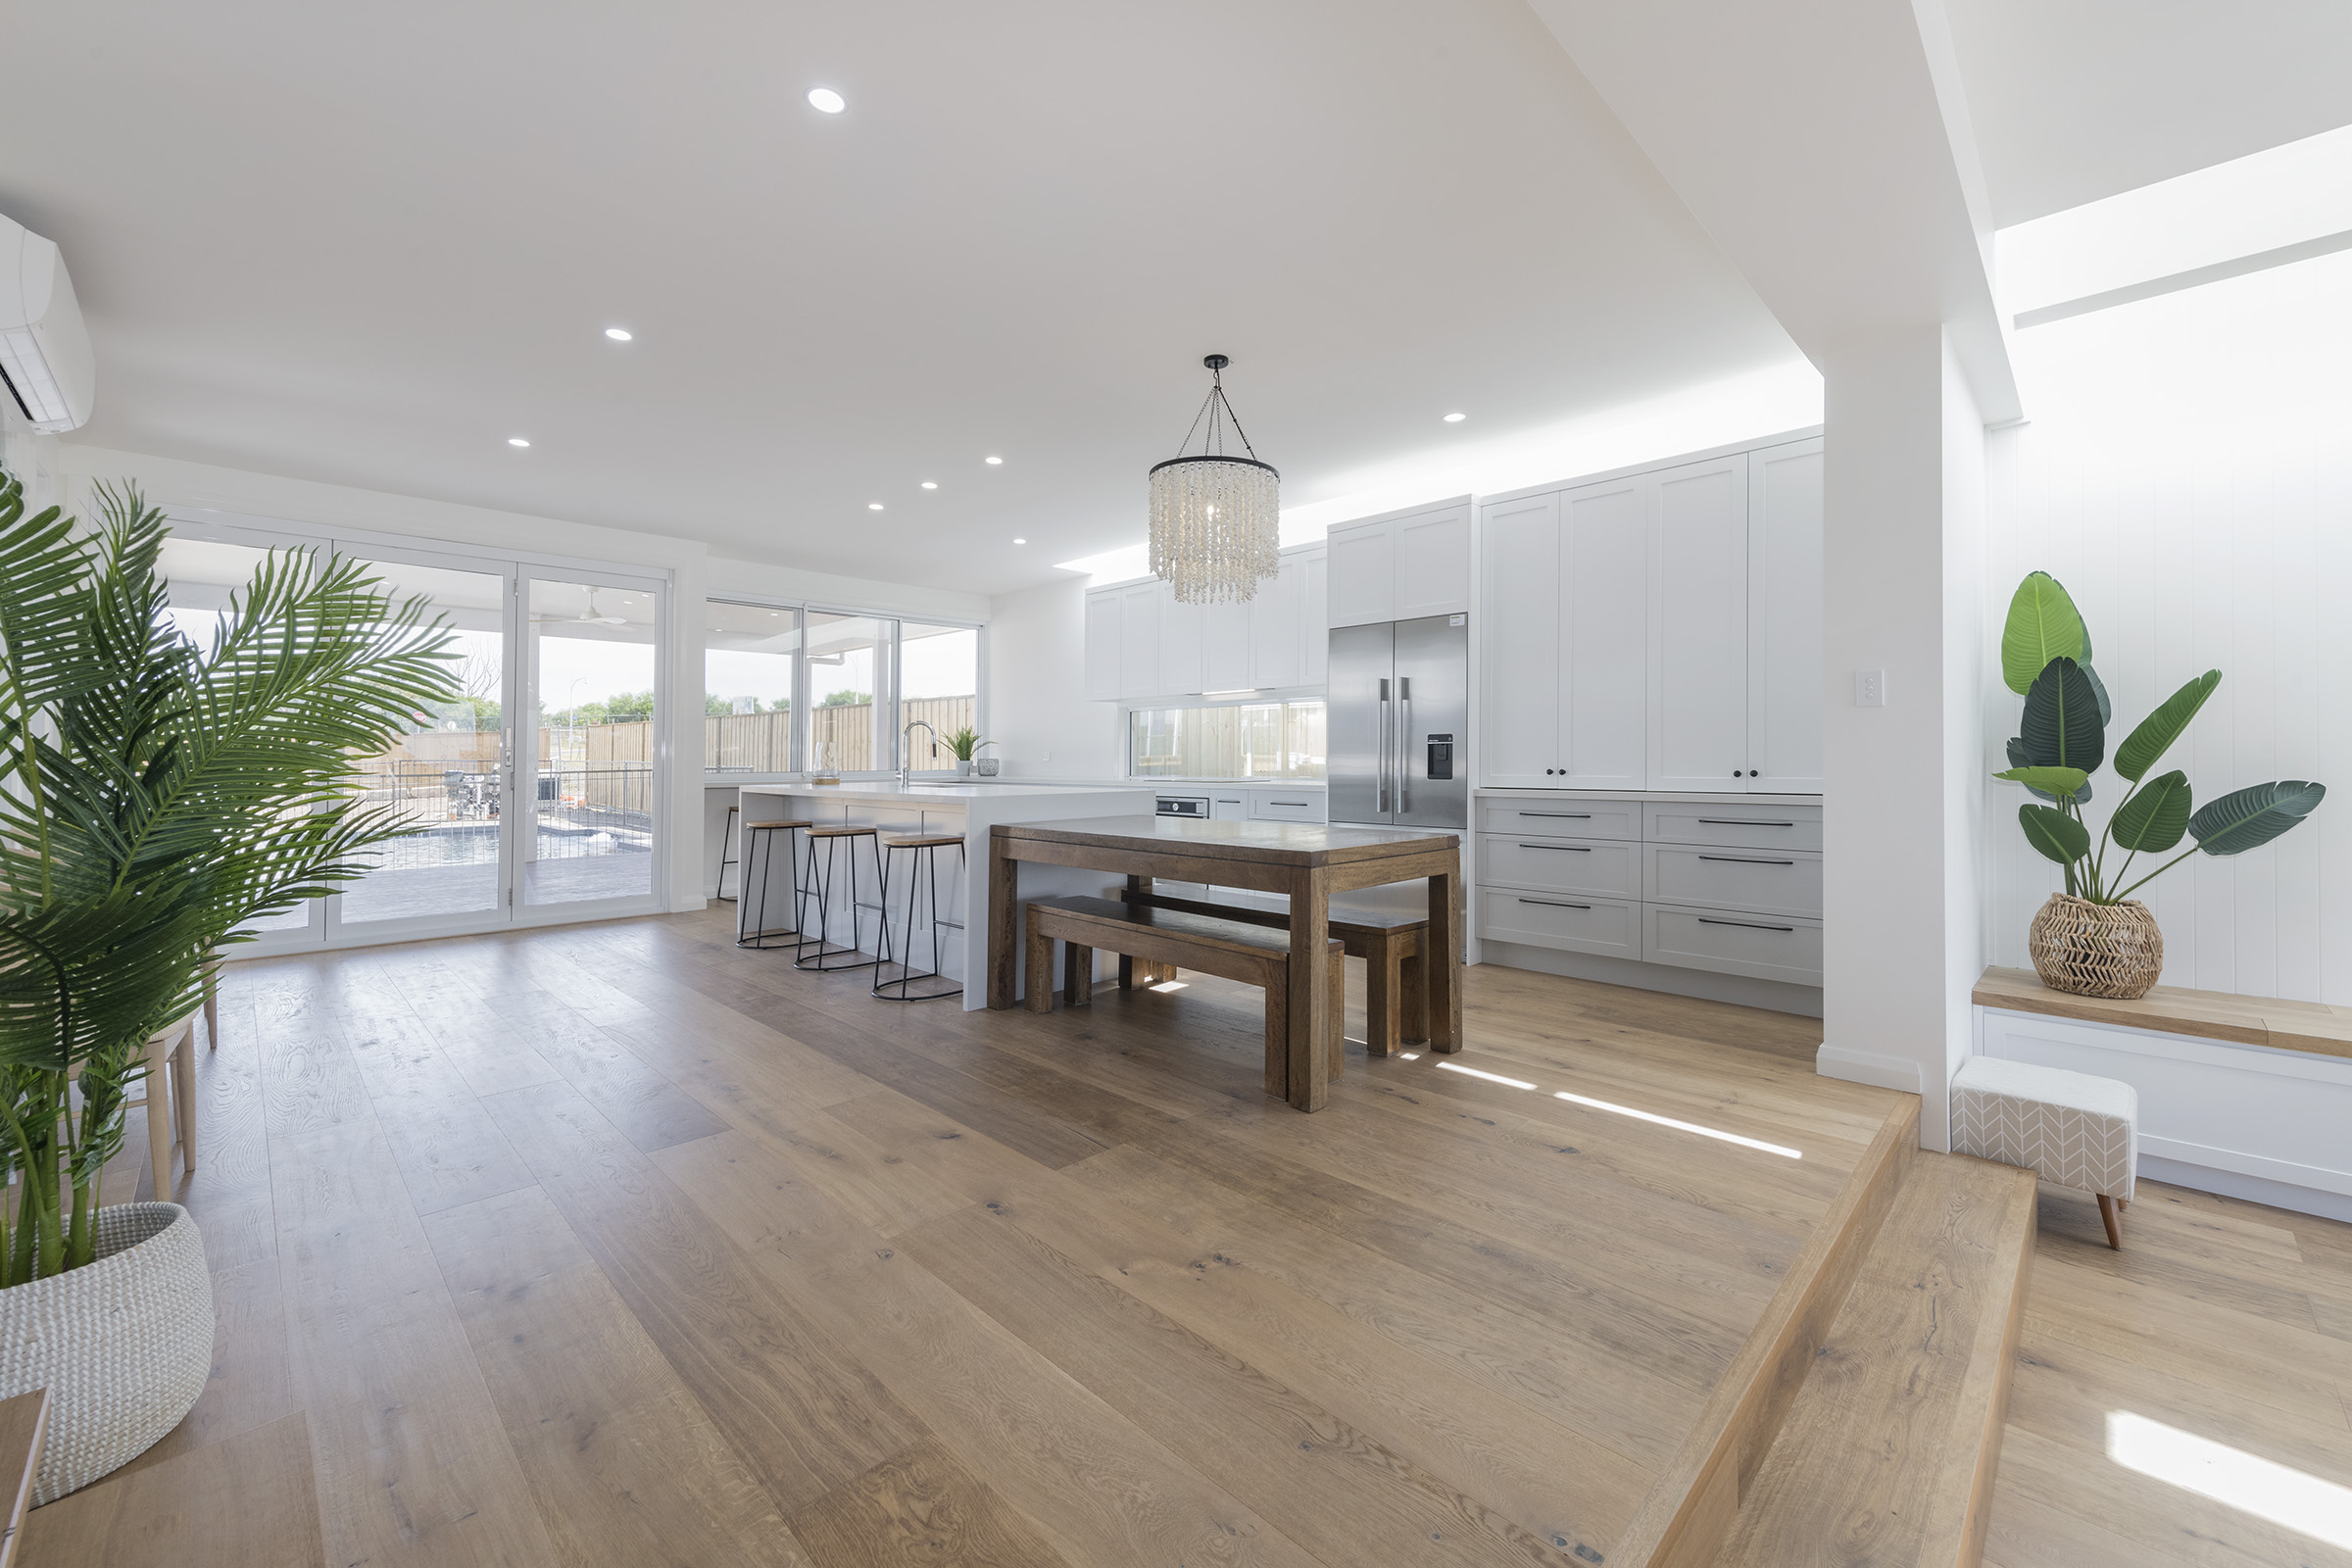 Kitchen 1 - Luxury Home Builder Newcastle